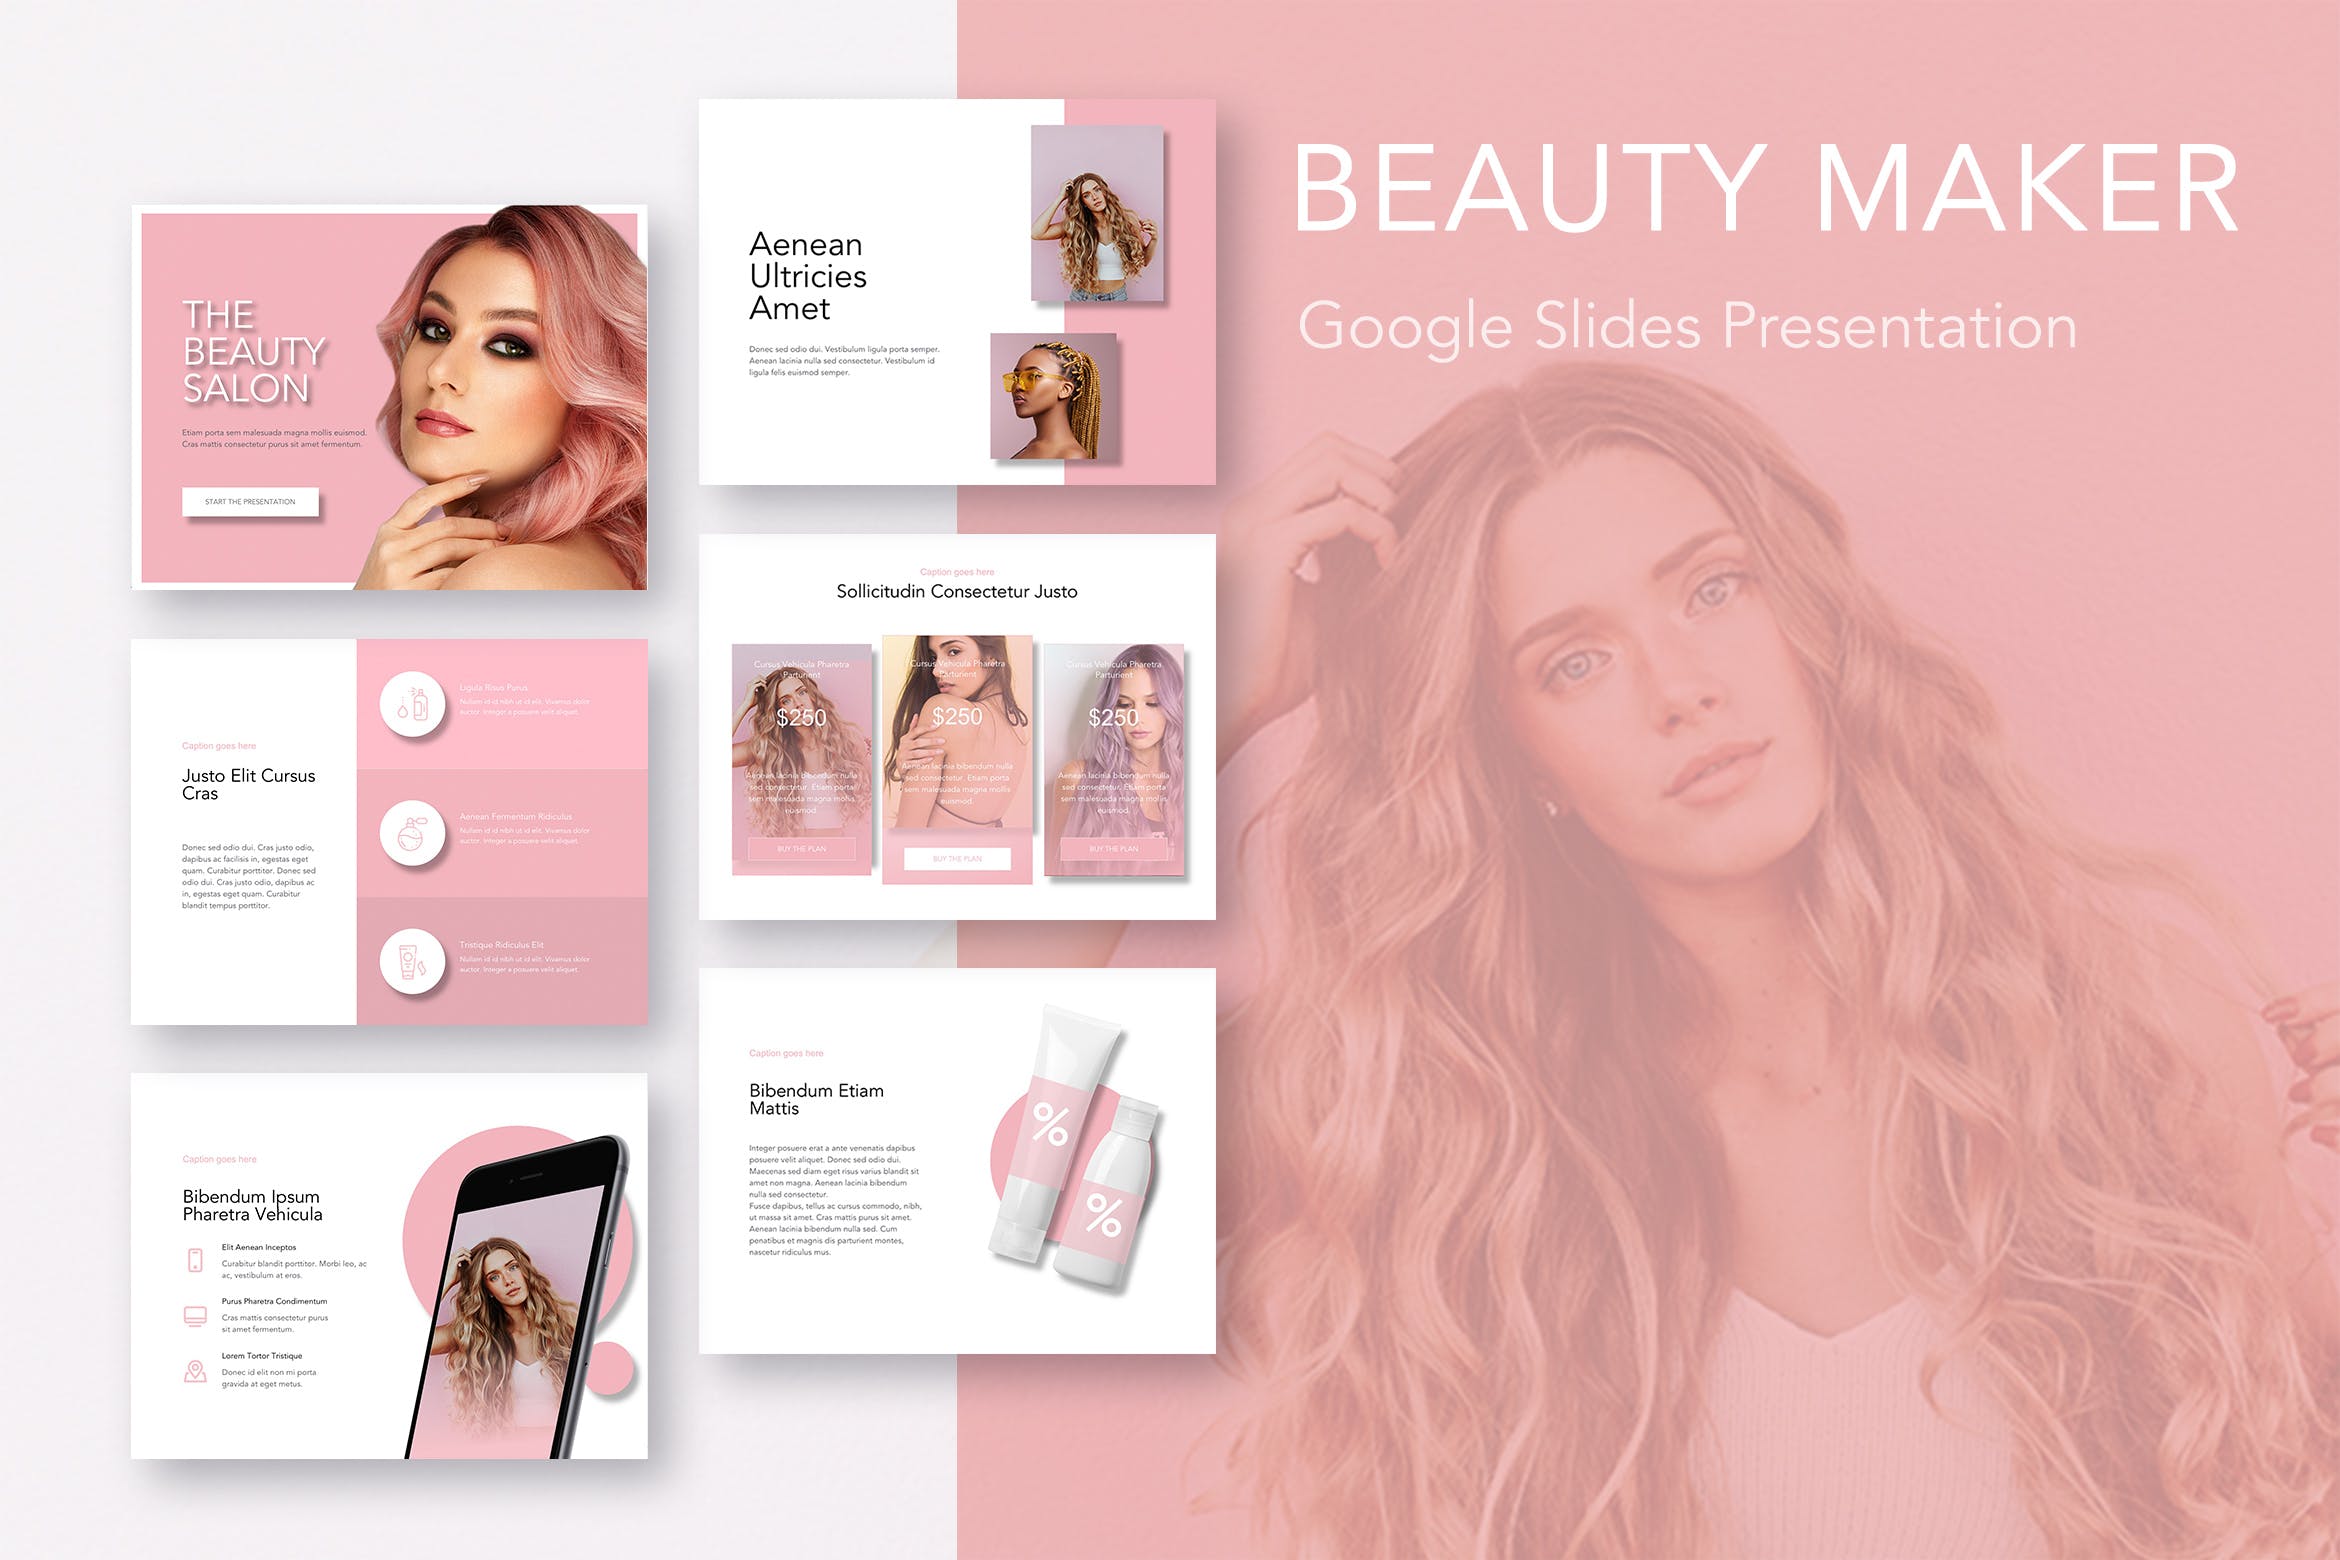 美妆行业主题谷歌幻灯片模板下载 Beauty Maker Google Slides Template插图